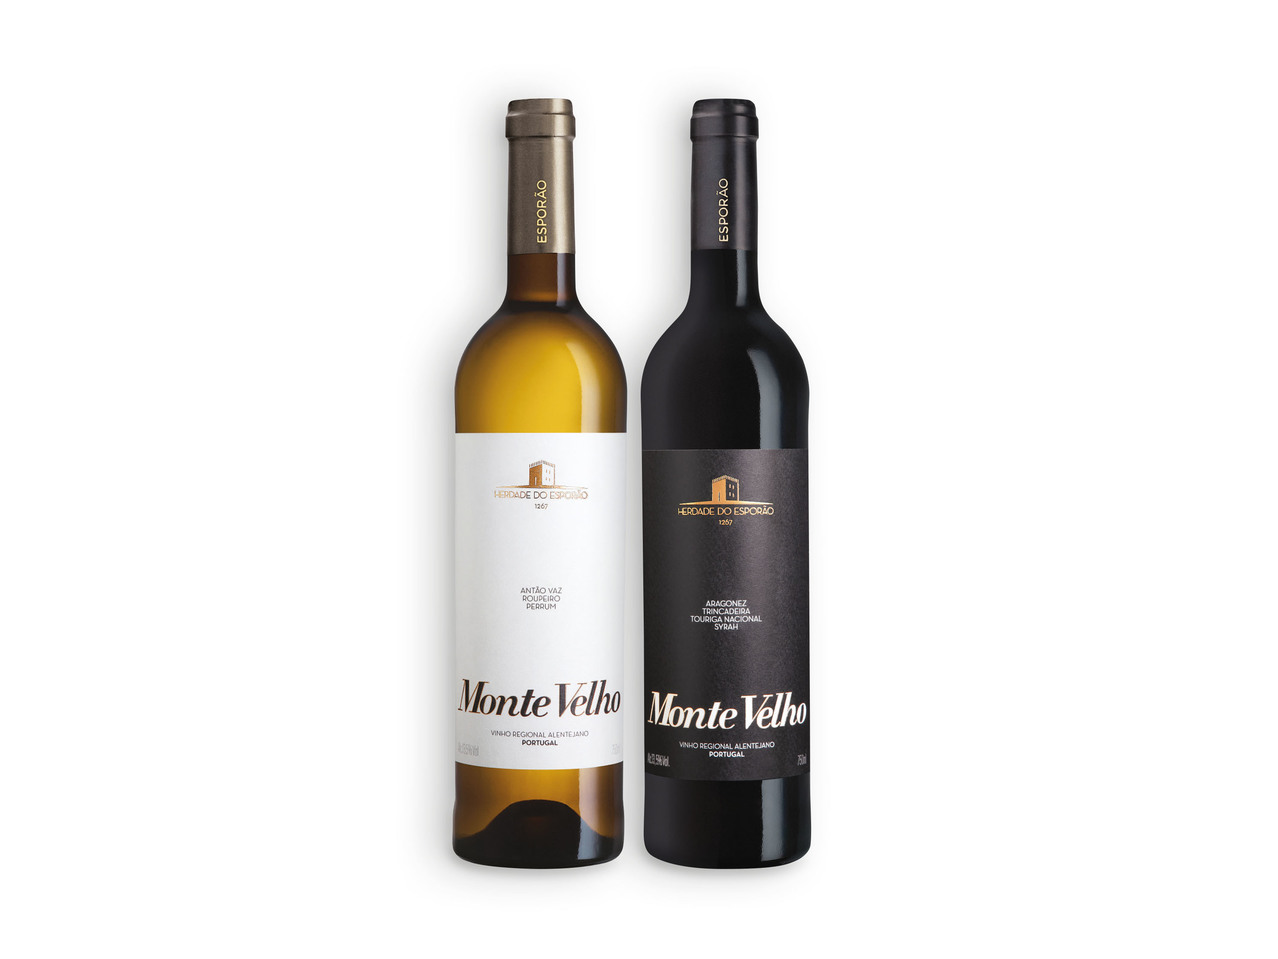 MONTE VELHO(R) Vinho Branco / Tinto Regional Alentejano